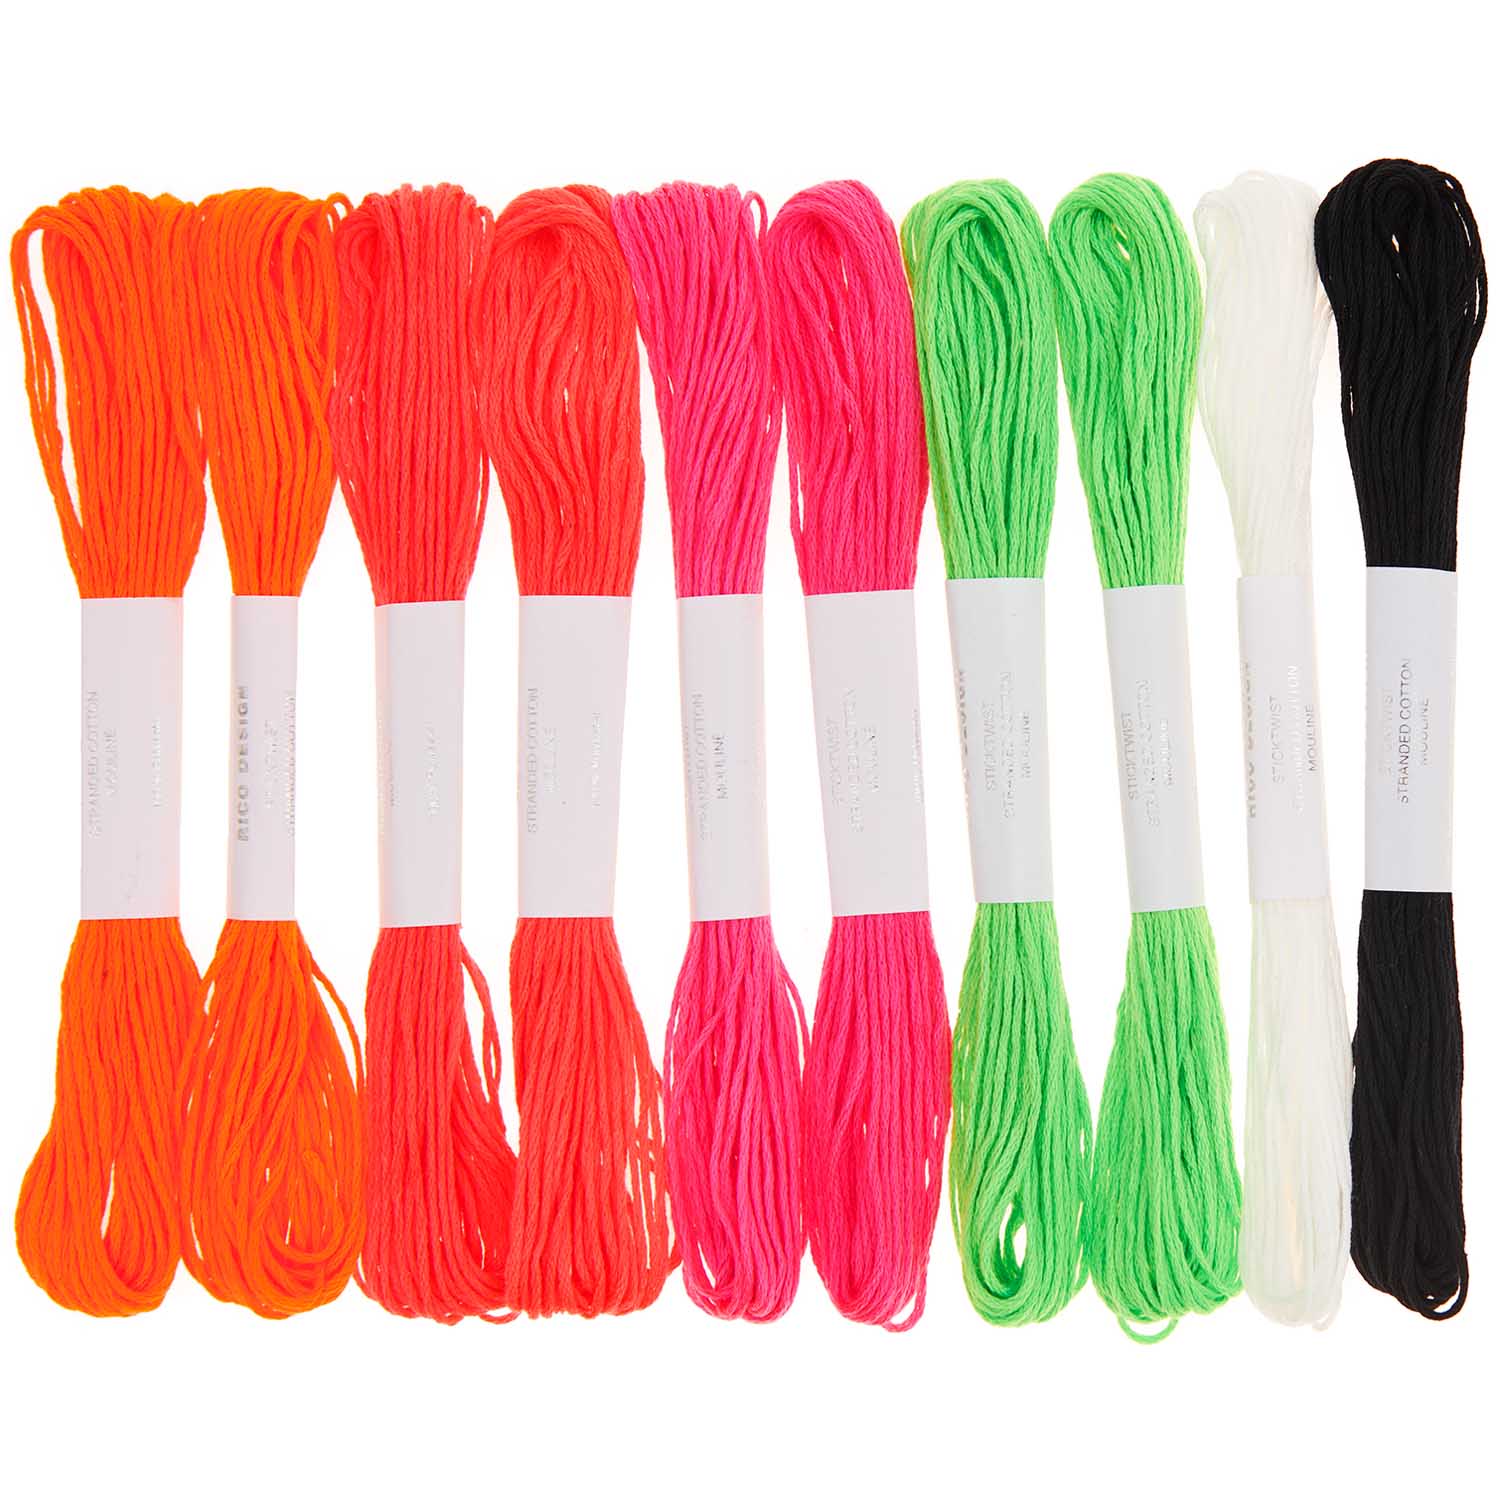 Stickgarnset Neon 100% Baumwolle 6-fädig 6 versch. Farben 8m/Farbe